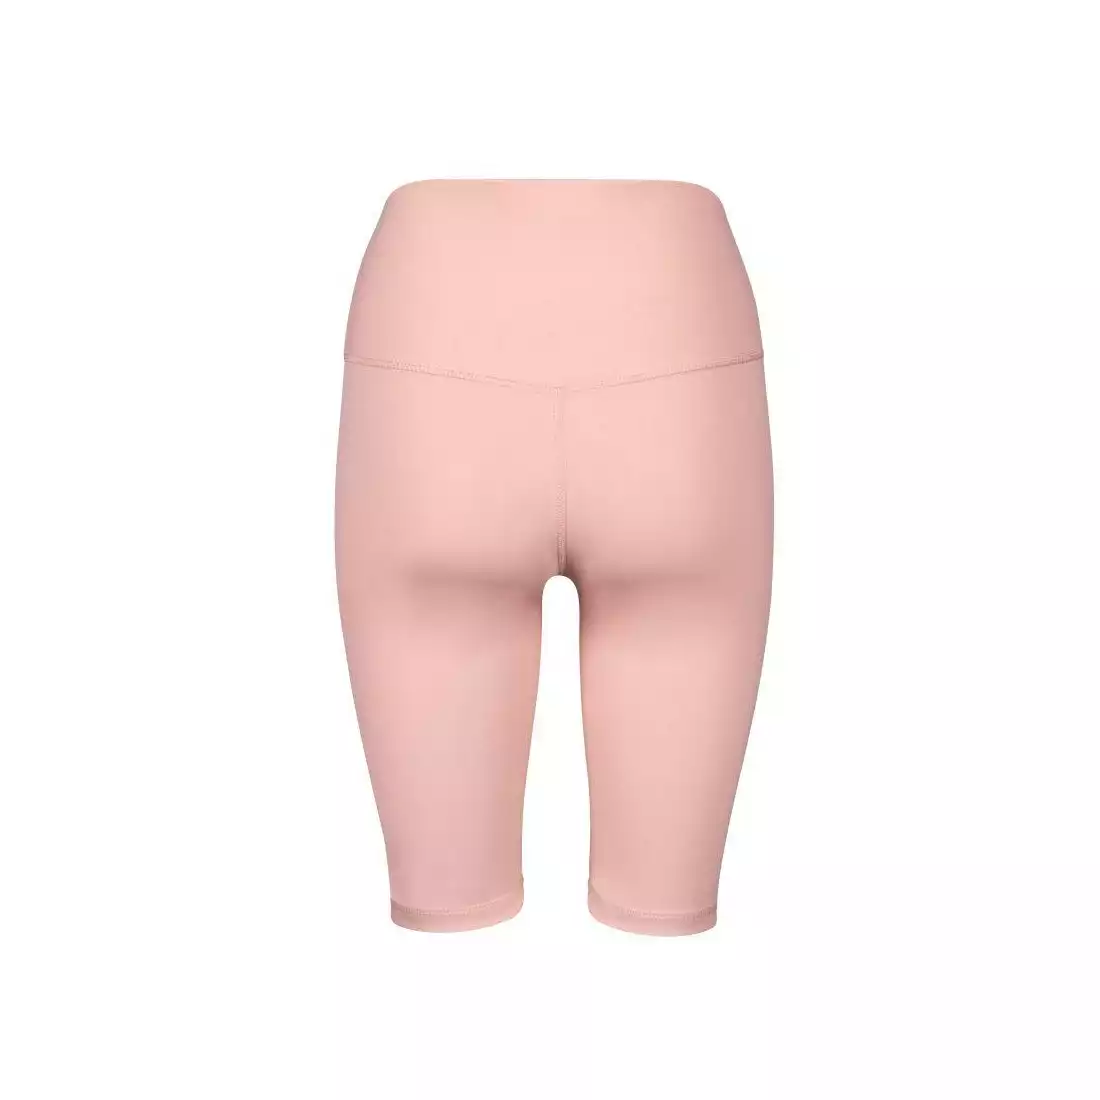 FORCE SIMPLE dámské sportovní šortky, růžový